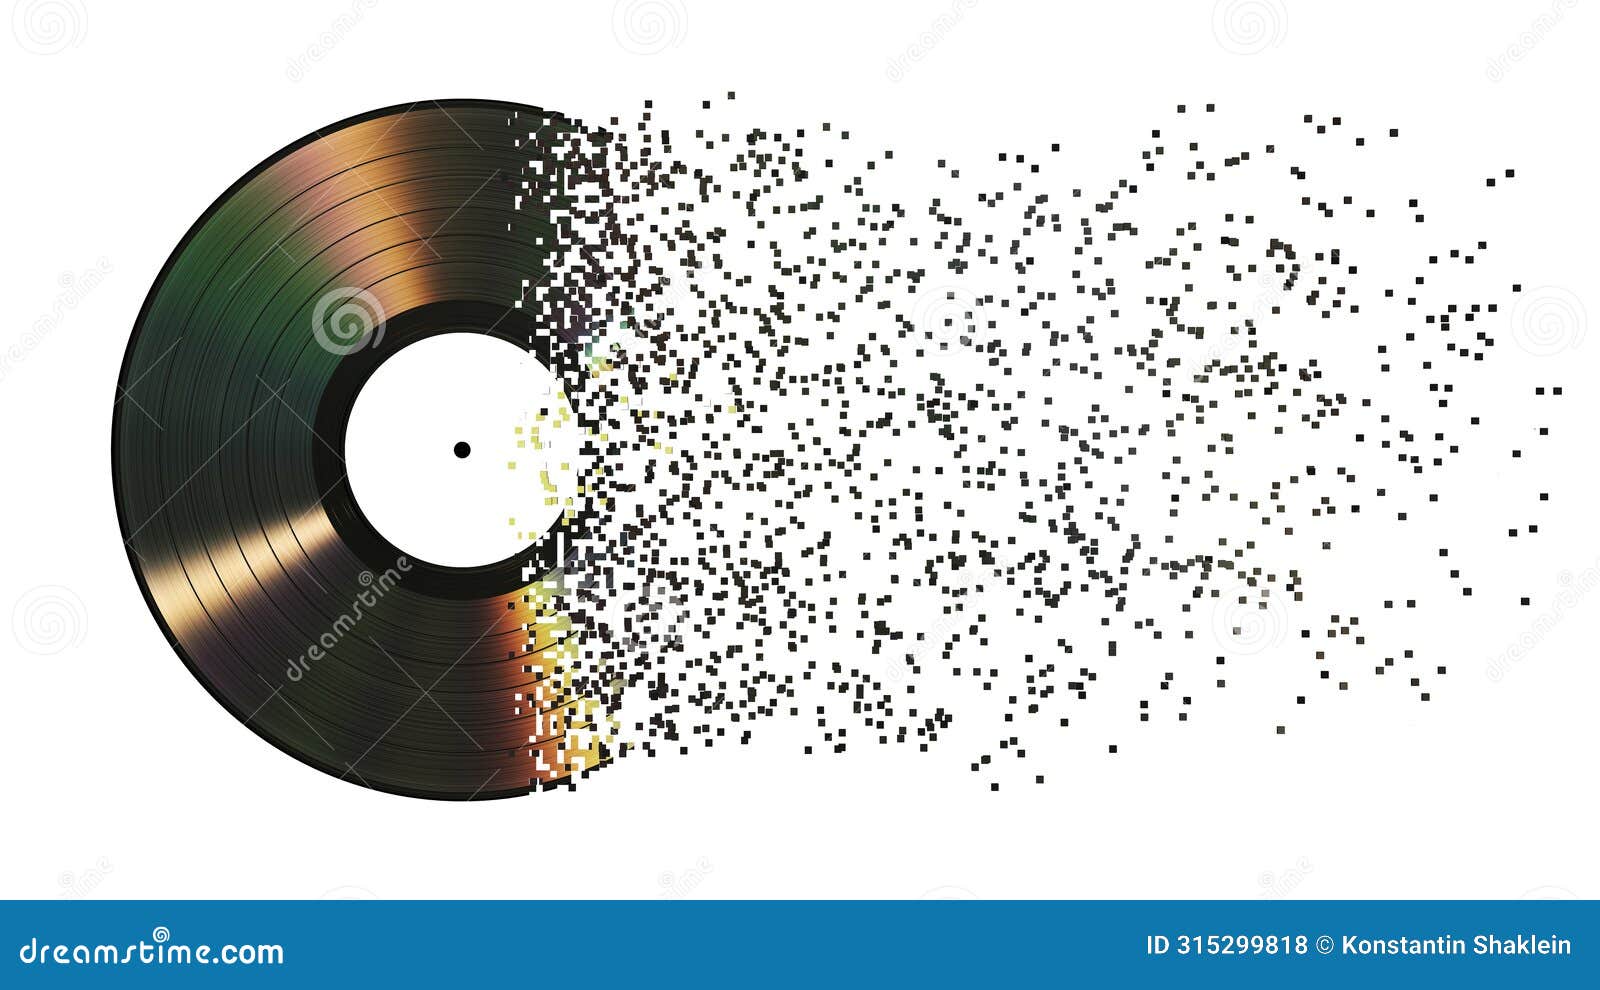 iridescent vinyl disk crumbles into pixels